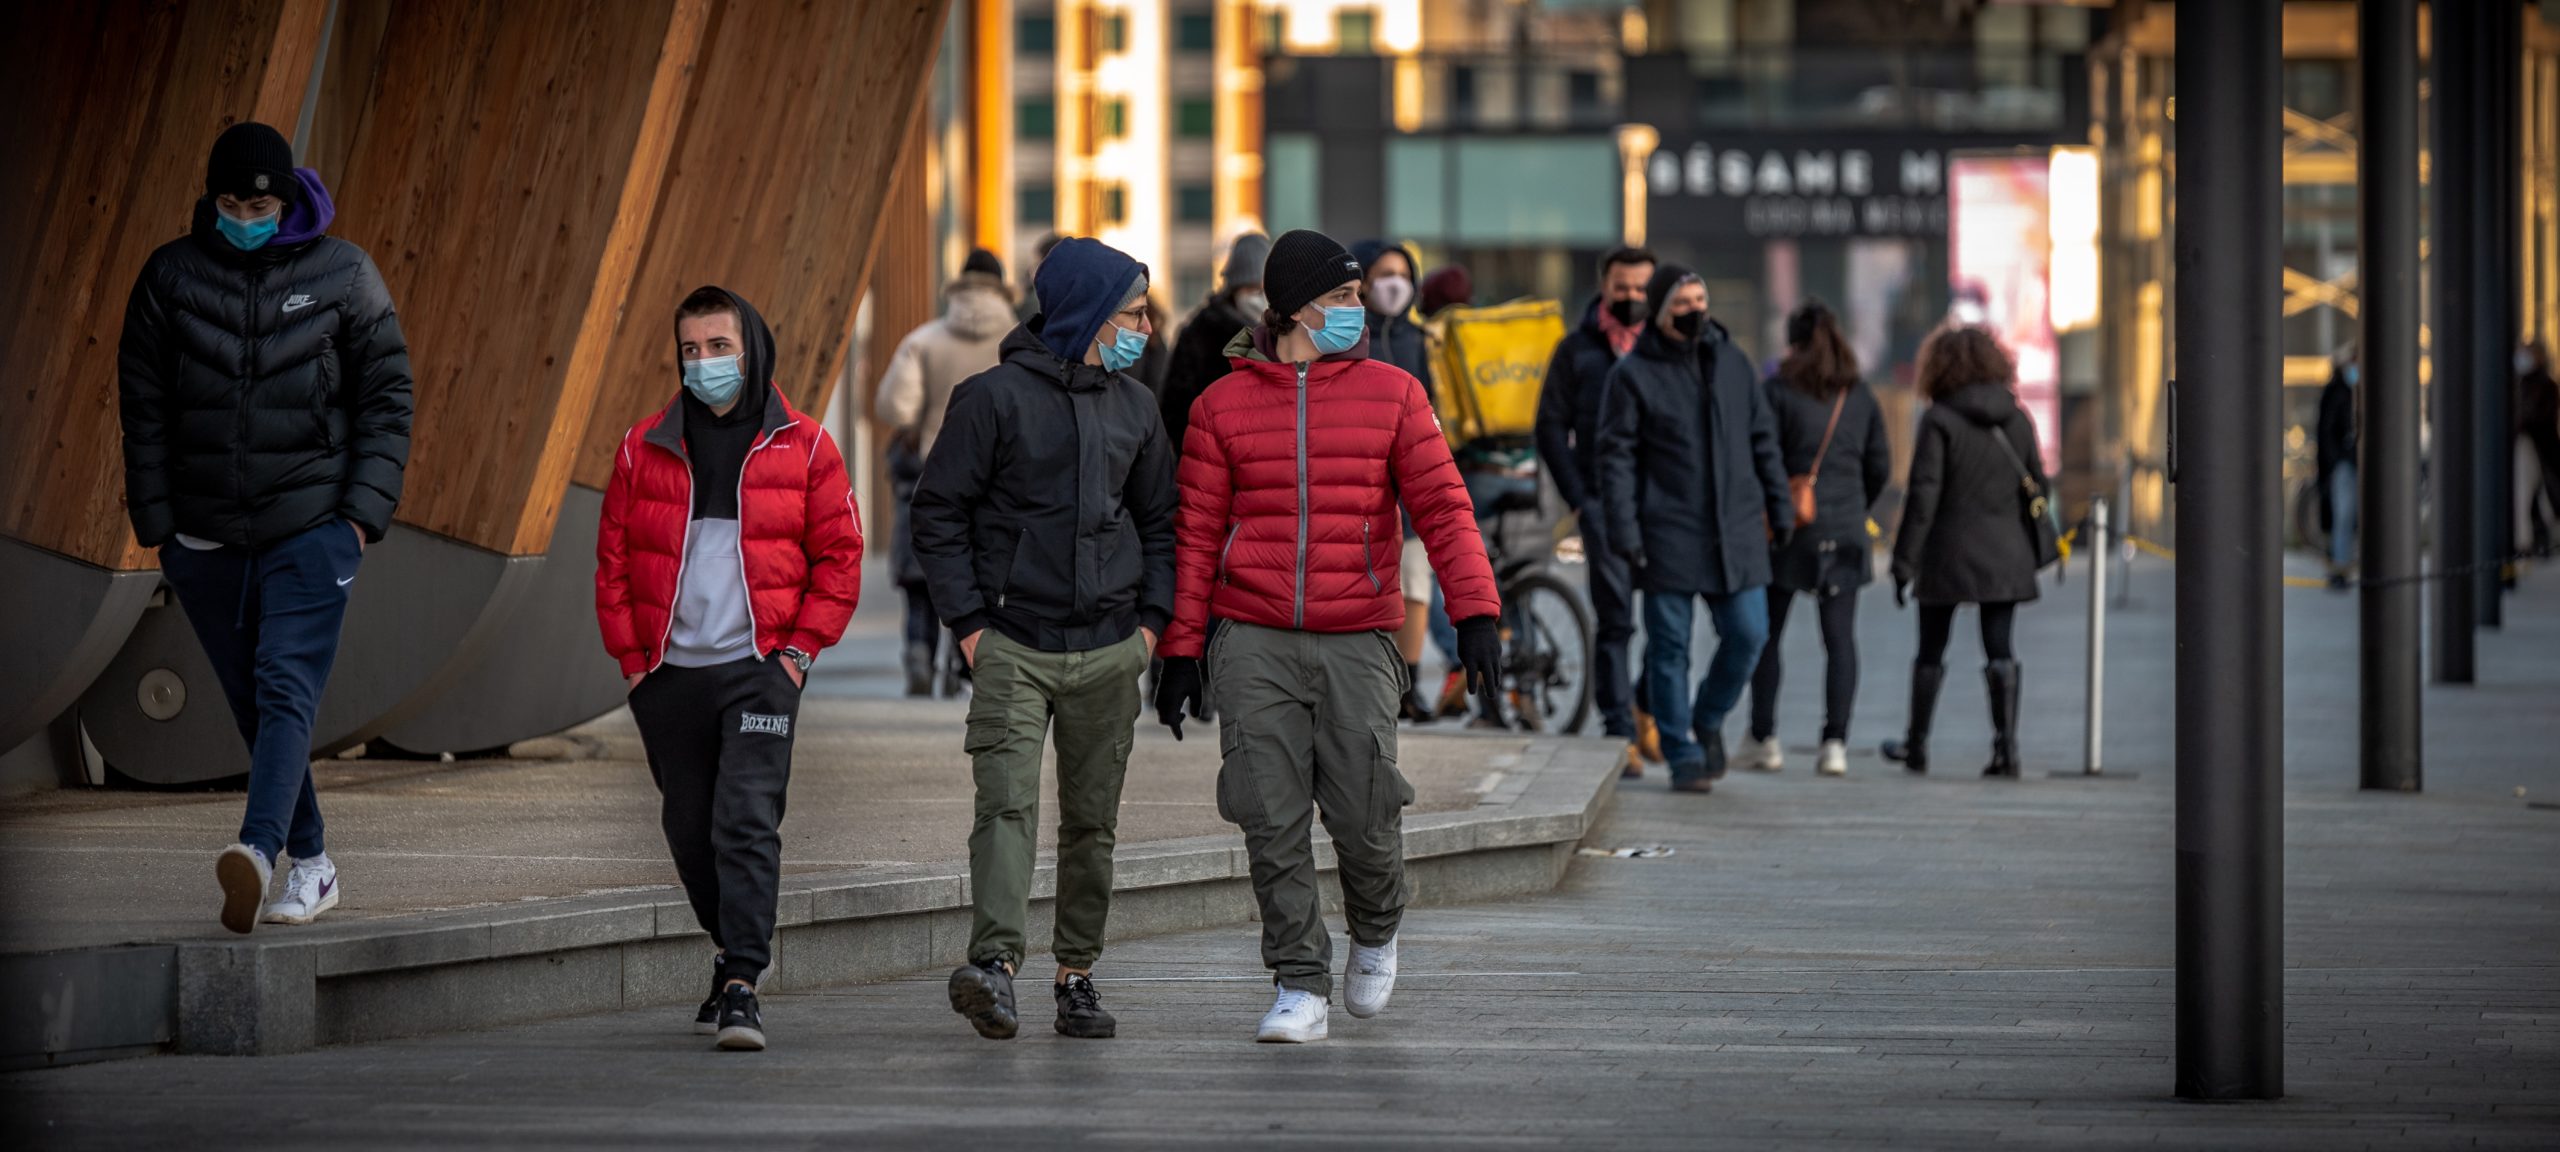 Passants dans la rue en temps de covid Siensano Belgique Bruxelles Wallonie Flandre coronavirus pandémié épidémie incidence contamination